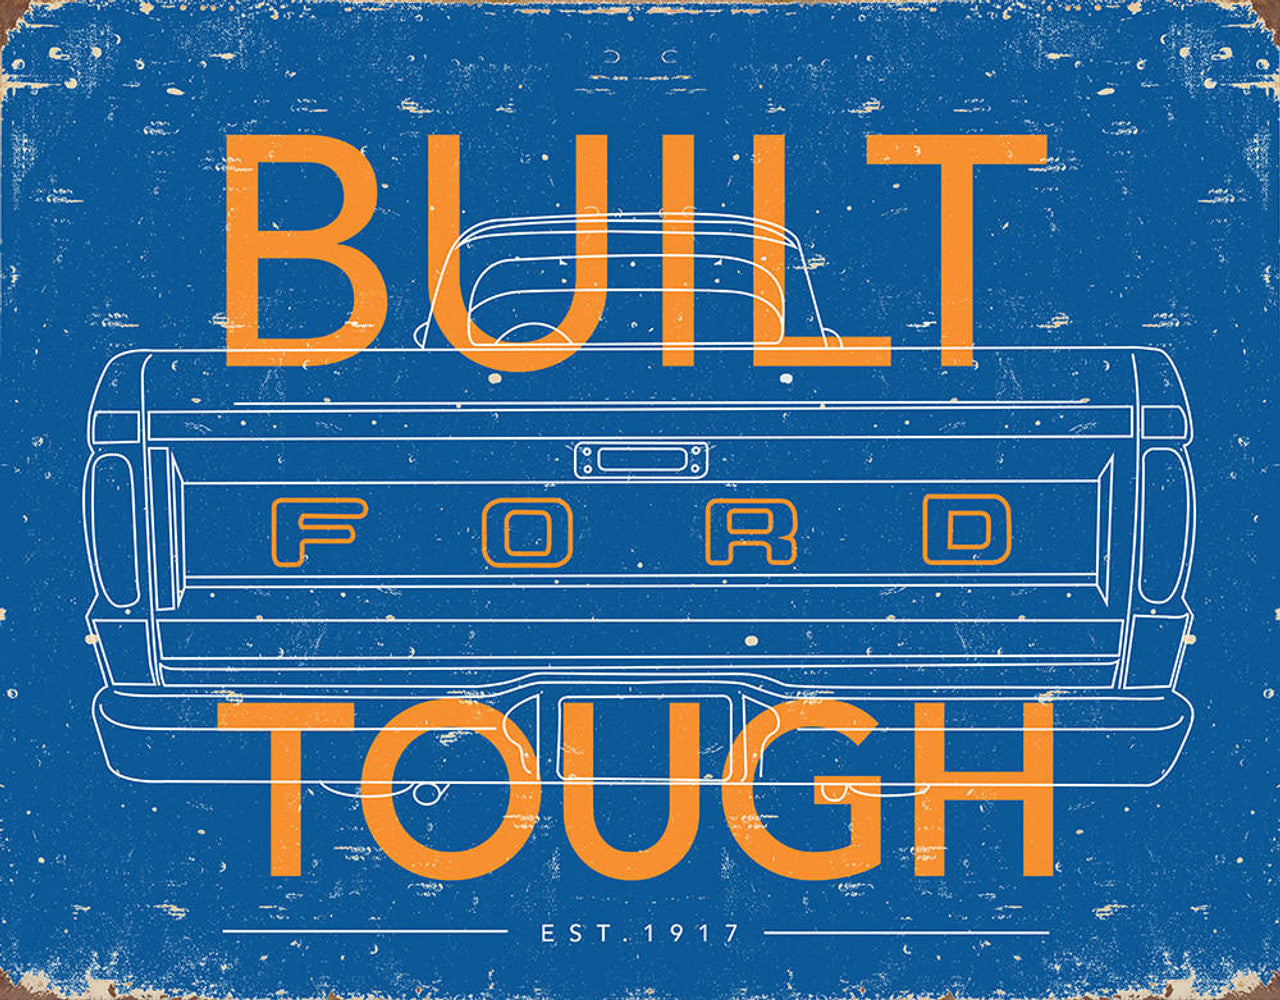 Ford Tough 16" x 12.5" Metal Tin Sign - 2673